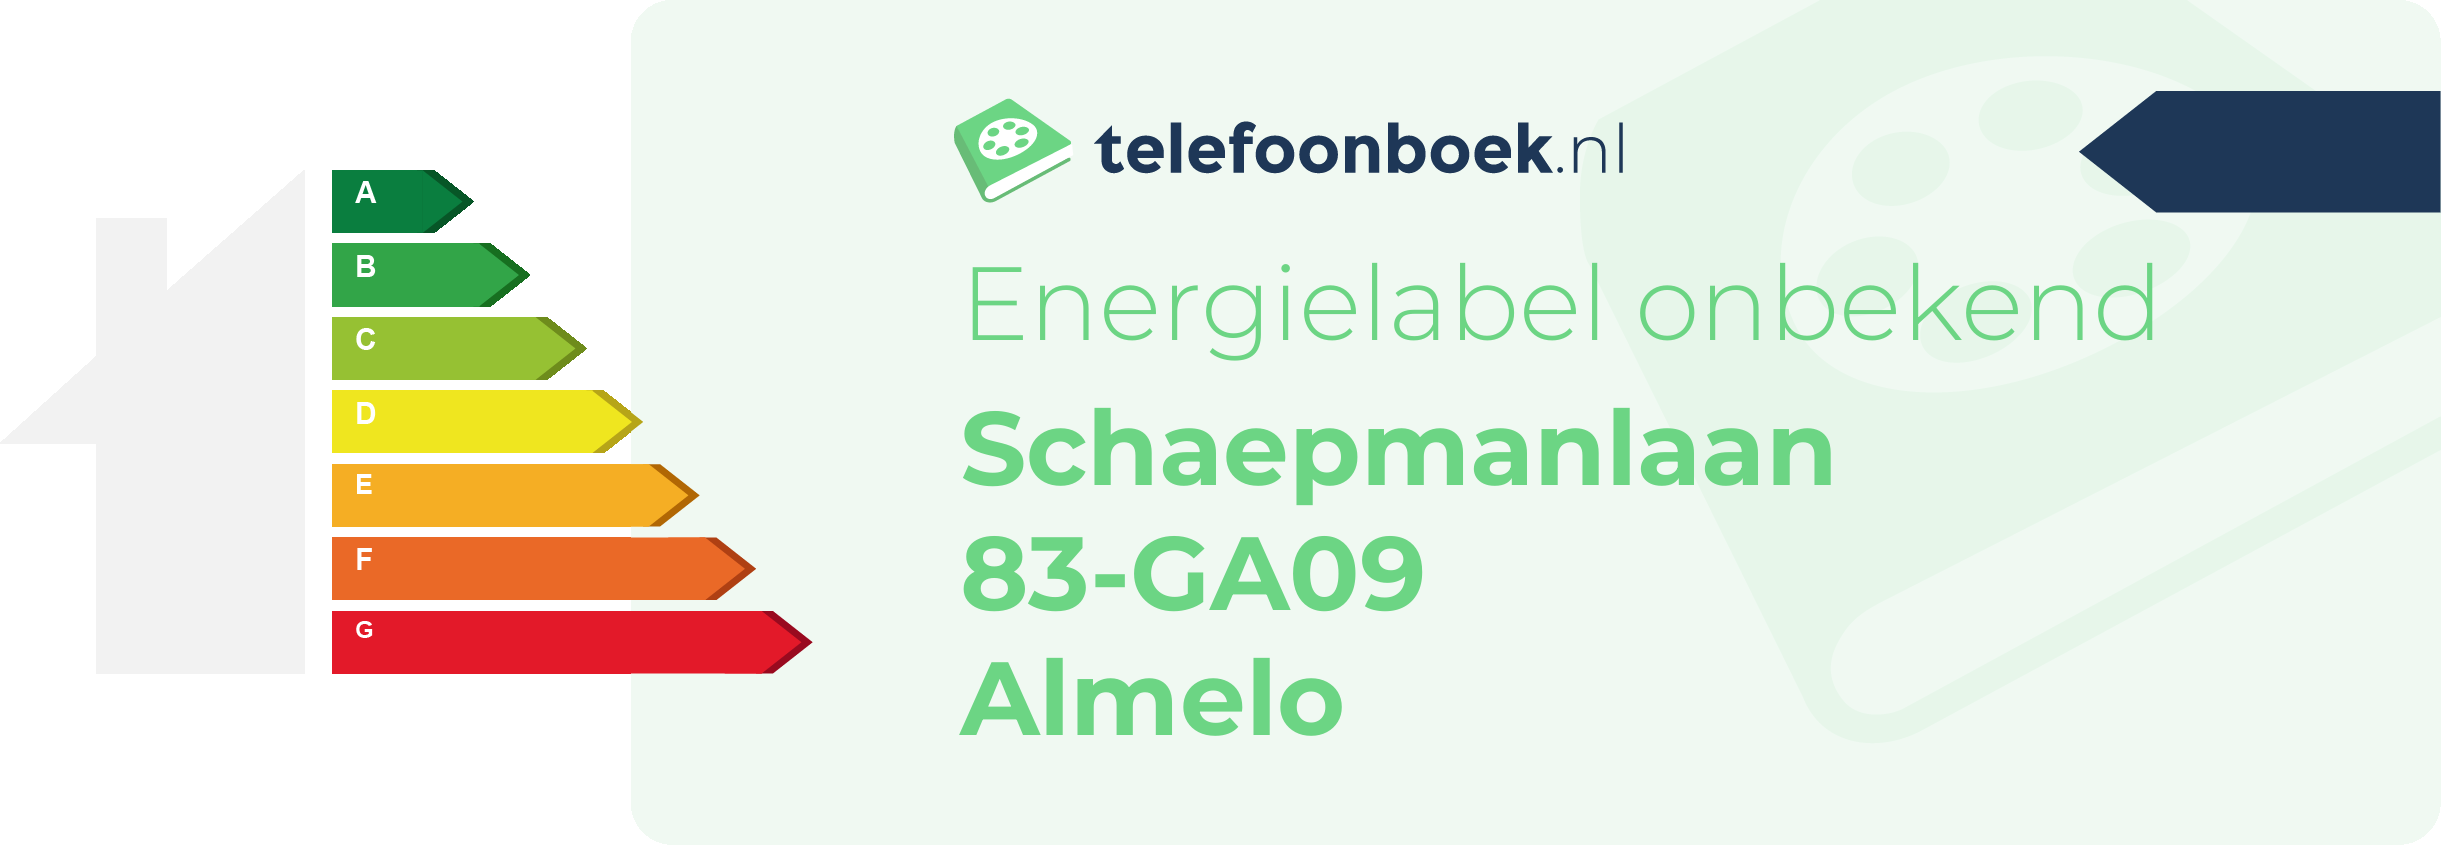 Energielabel Schaepmanlaan 83-GA09 Almelo